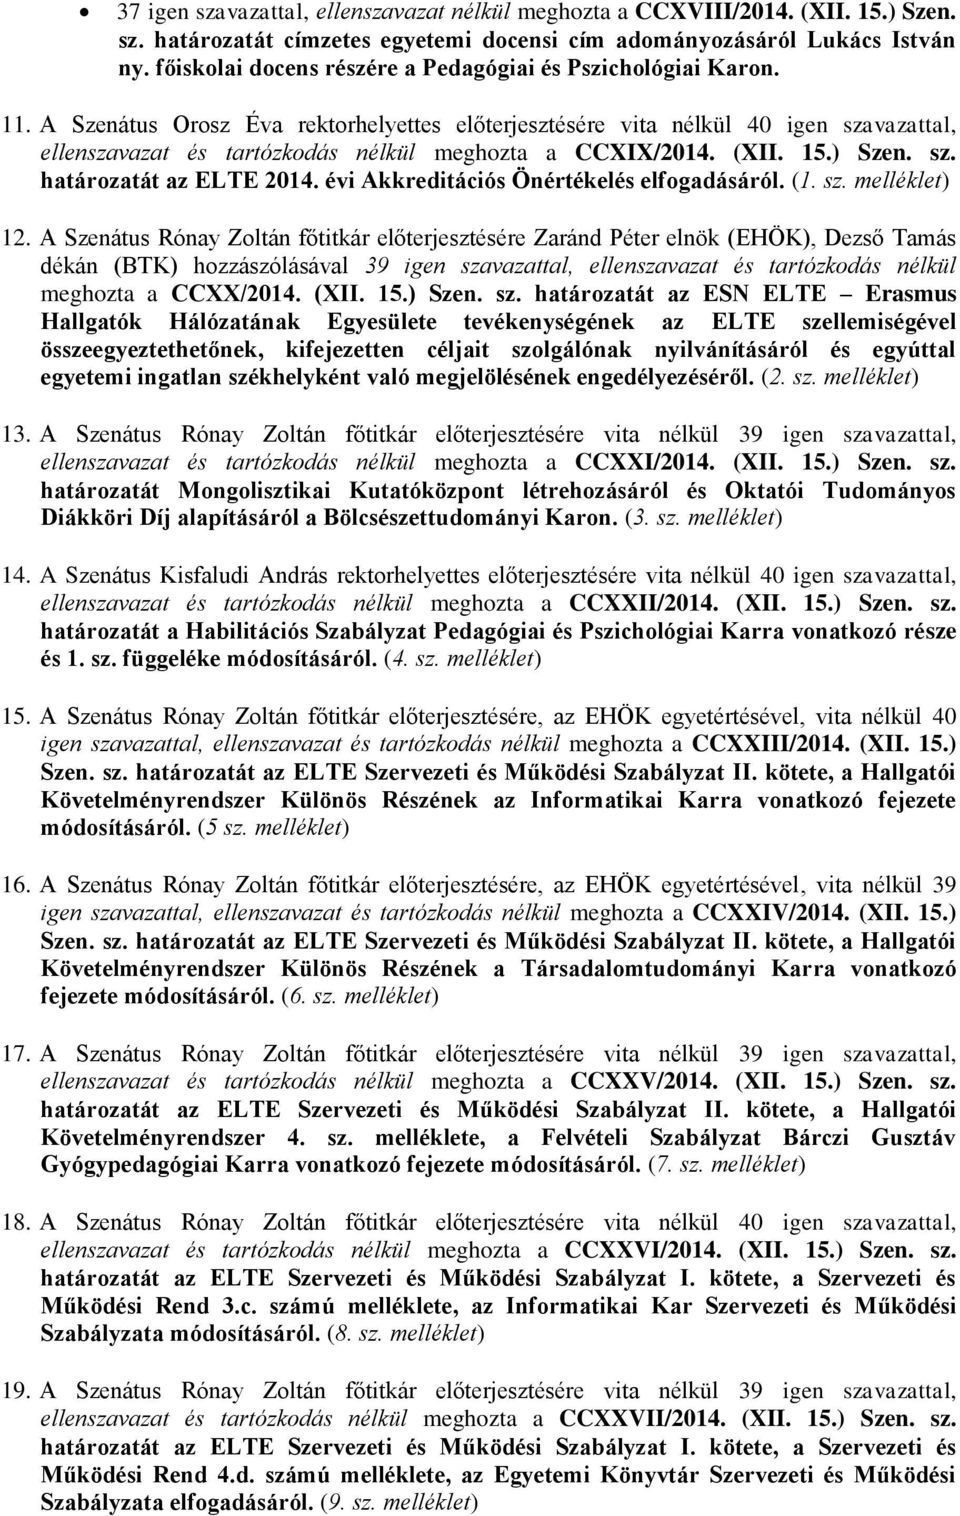 A Szenátus Orosz Éva rektorhelyettes előterjesztésére vita nélkül 40 igen szavazattal, ellenszavazat és tartózkodás nélkül meghozta a CCXIX/2014. (XII. 15.) Szen. sz. határozatát az ELTE 2014.